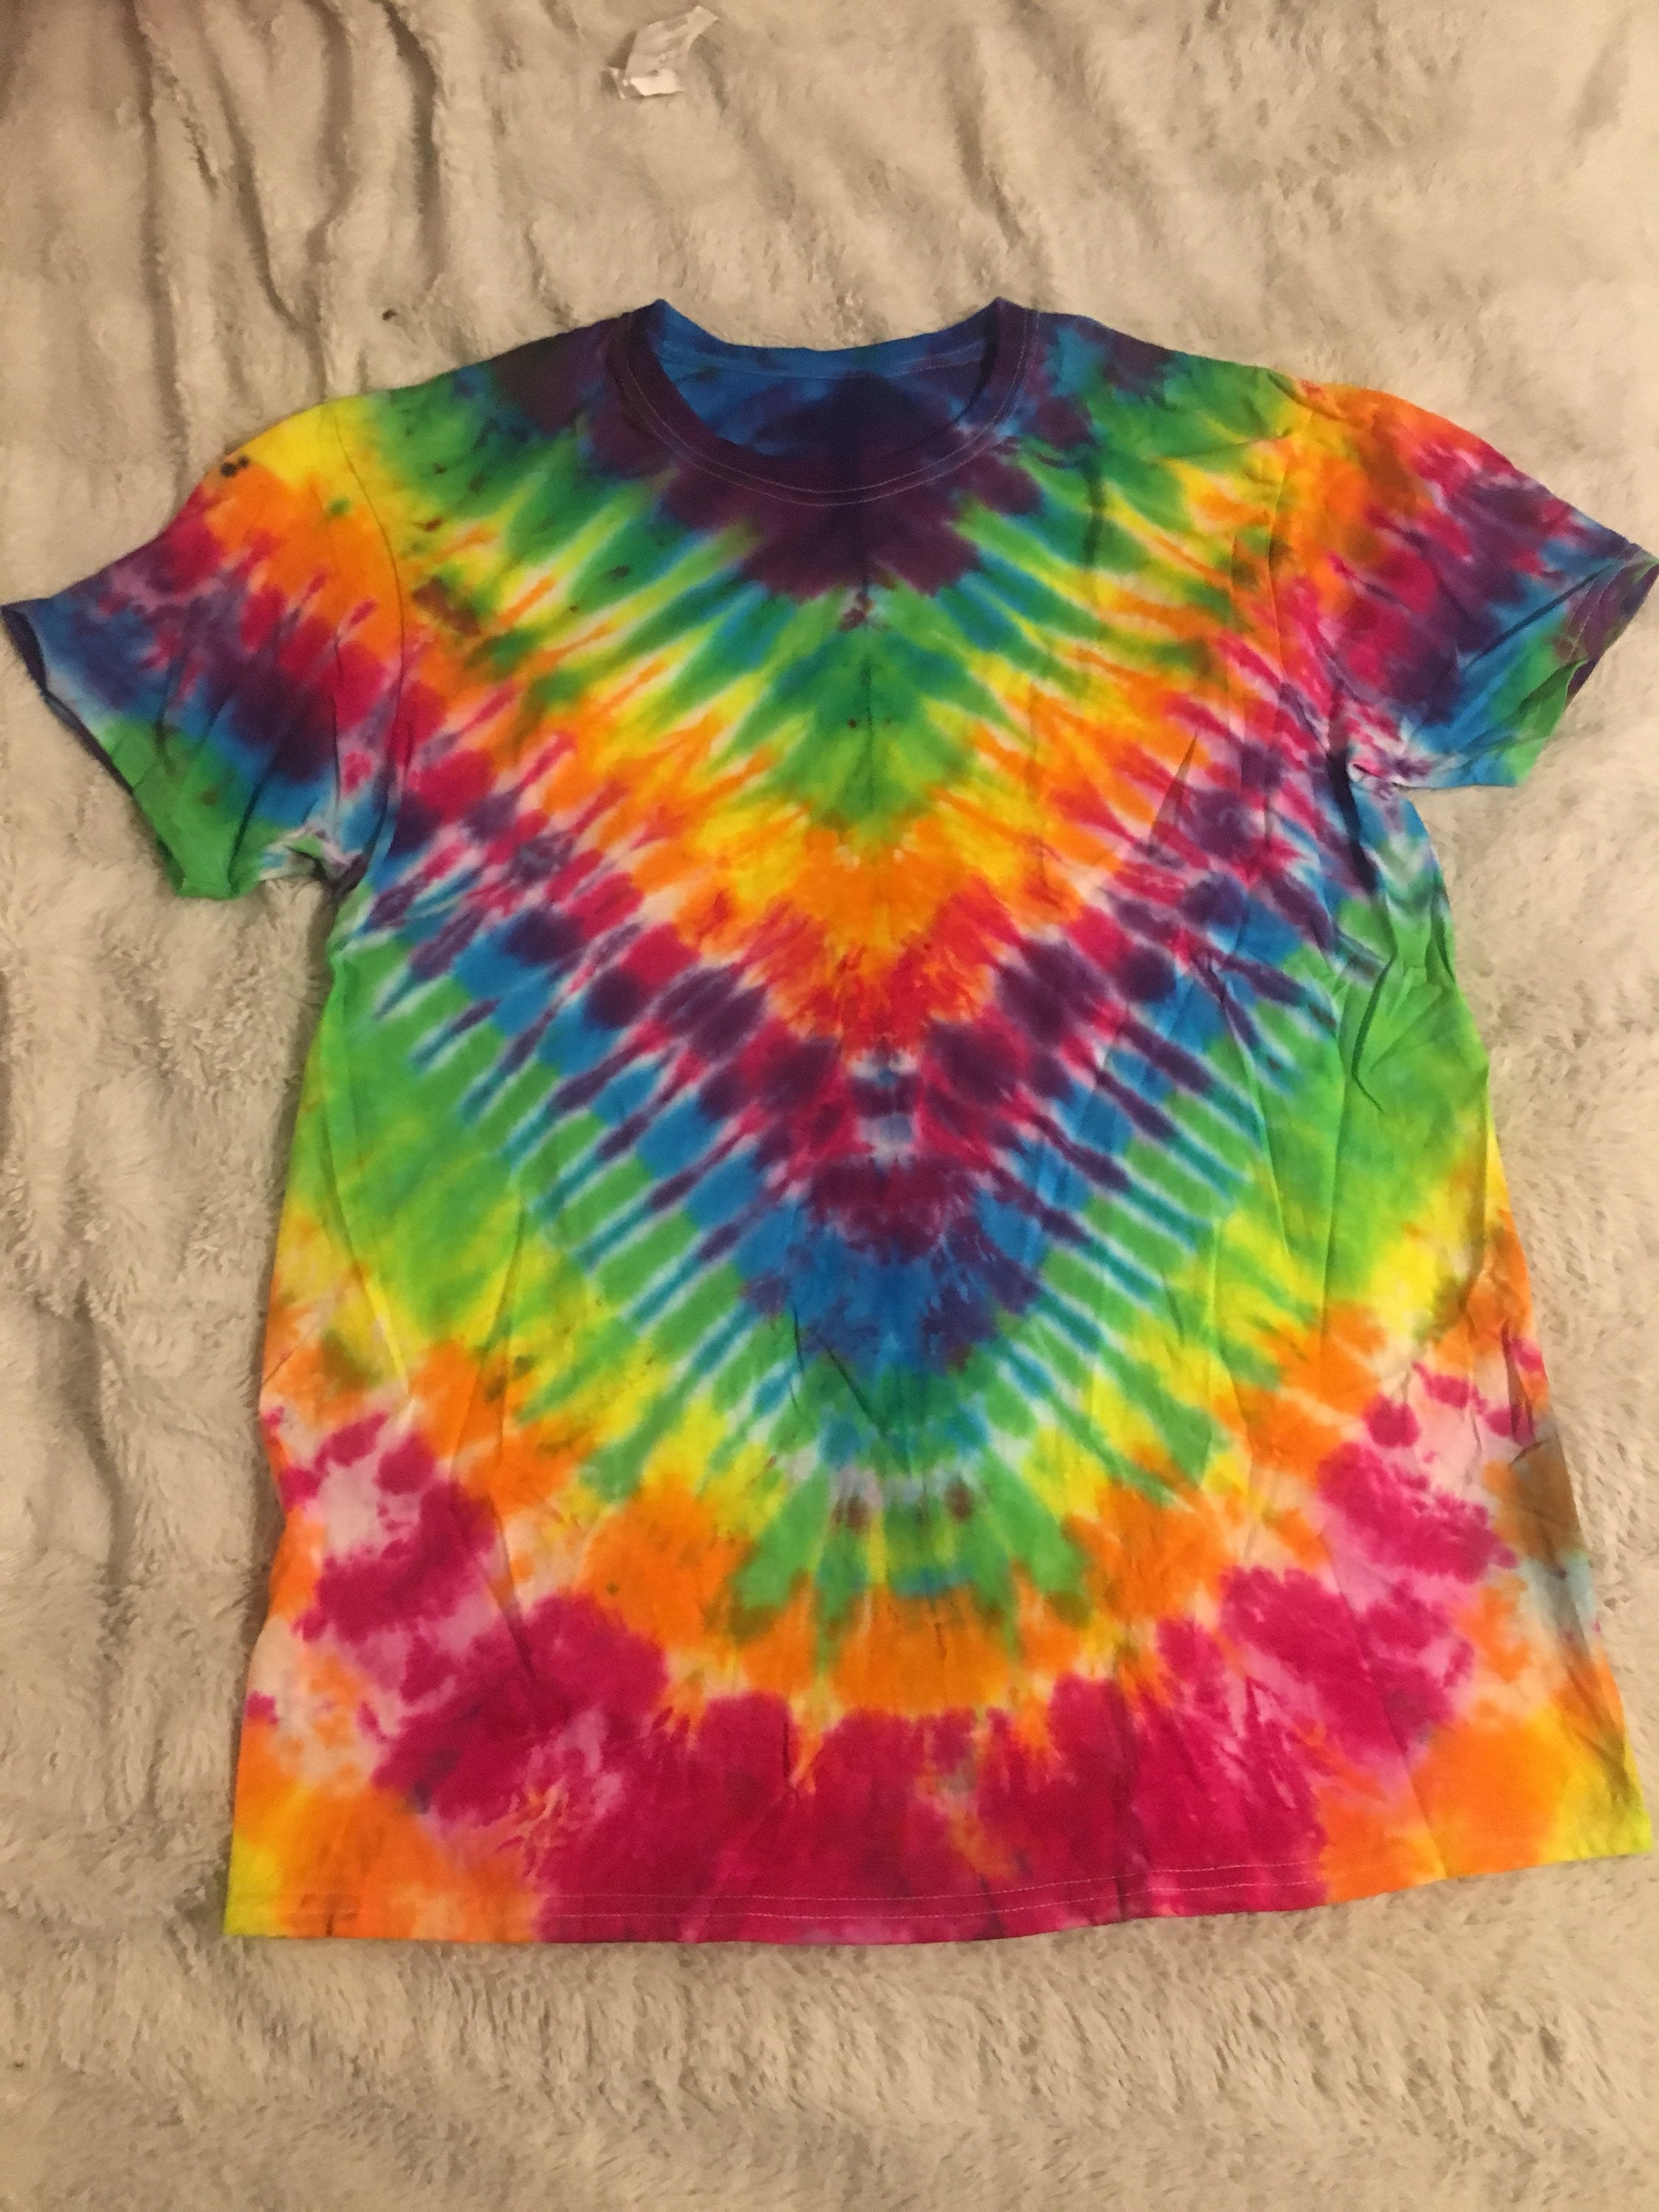 Rainbow 'V' Pattern Tie-dye T-shirt | Etsy